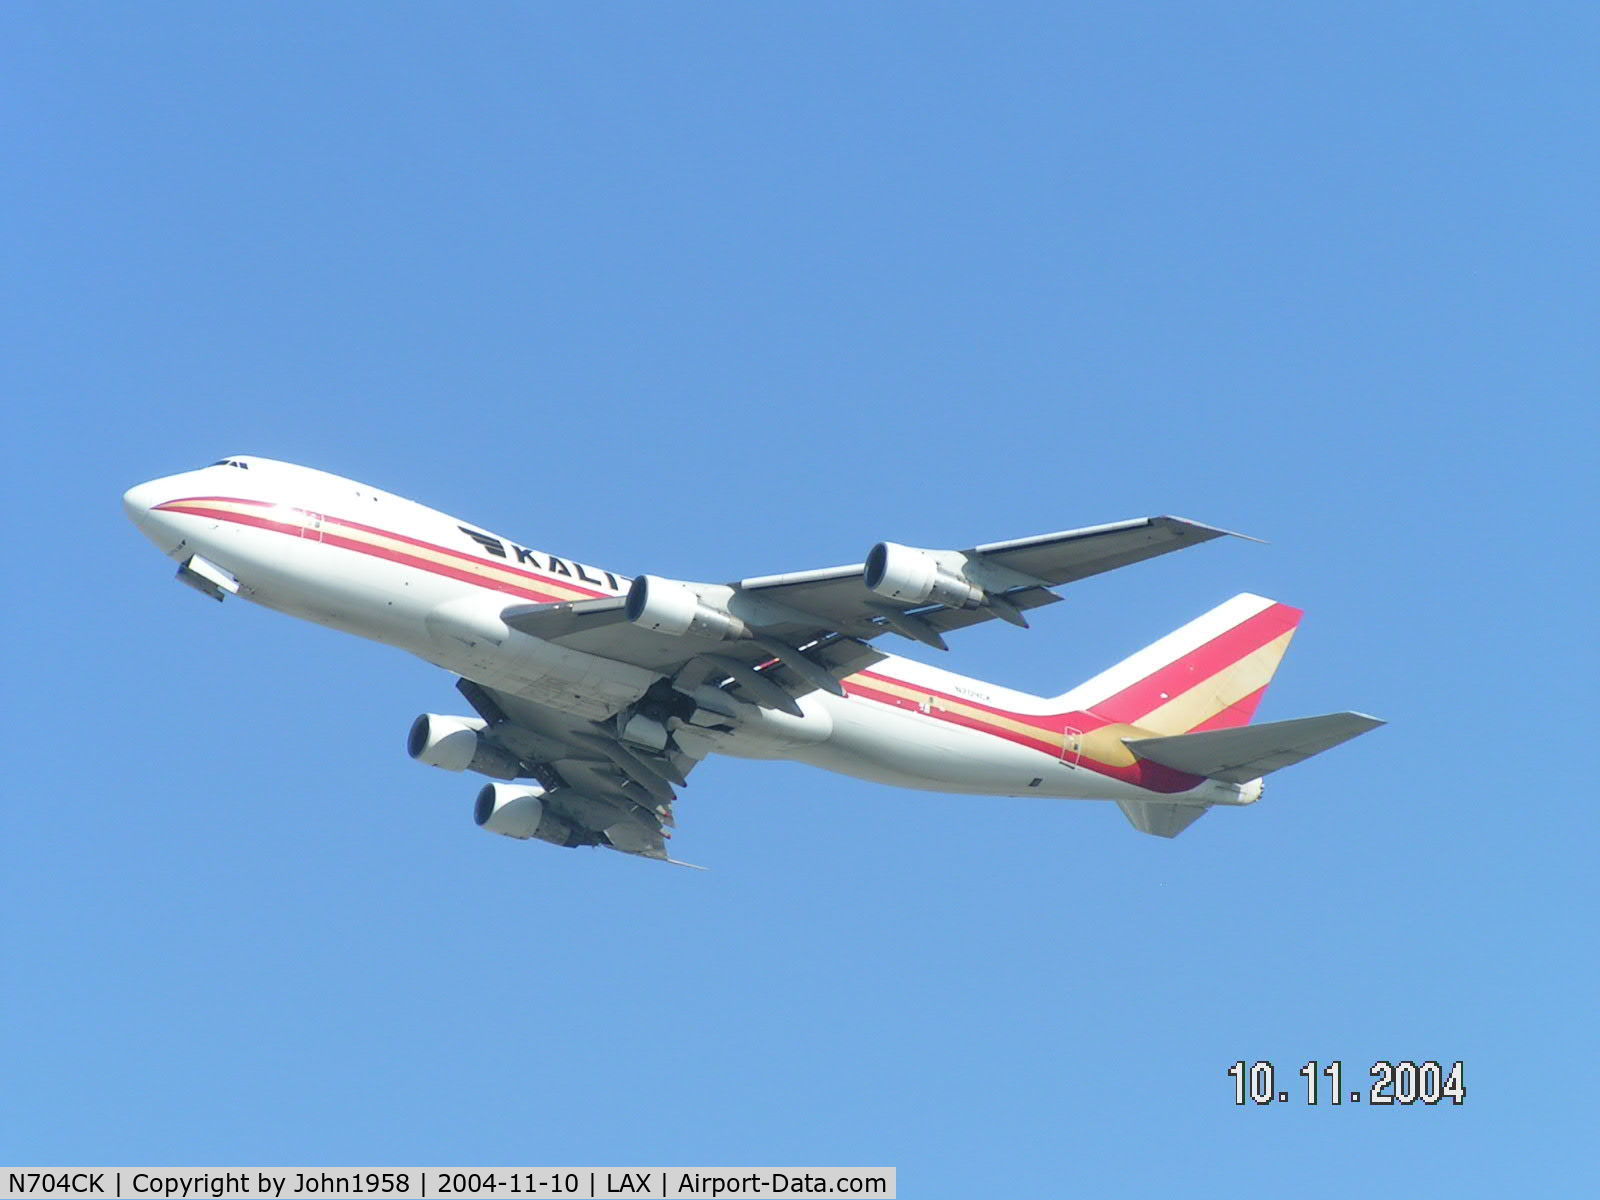 N704CK, 1980 Boeing 747-209F C/N 22299, Just taken off